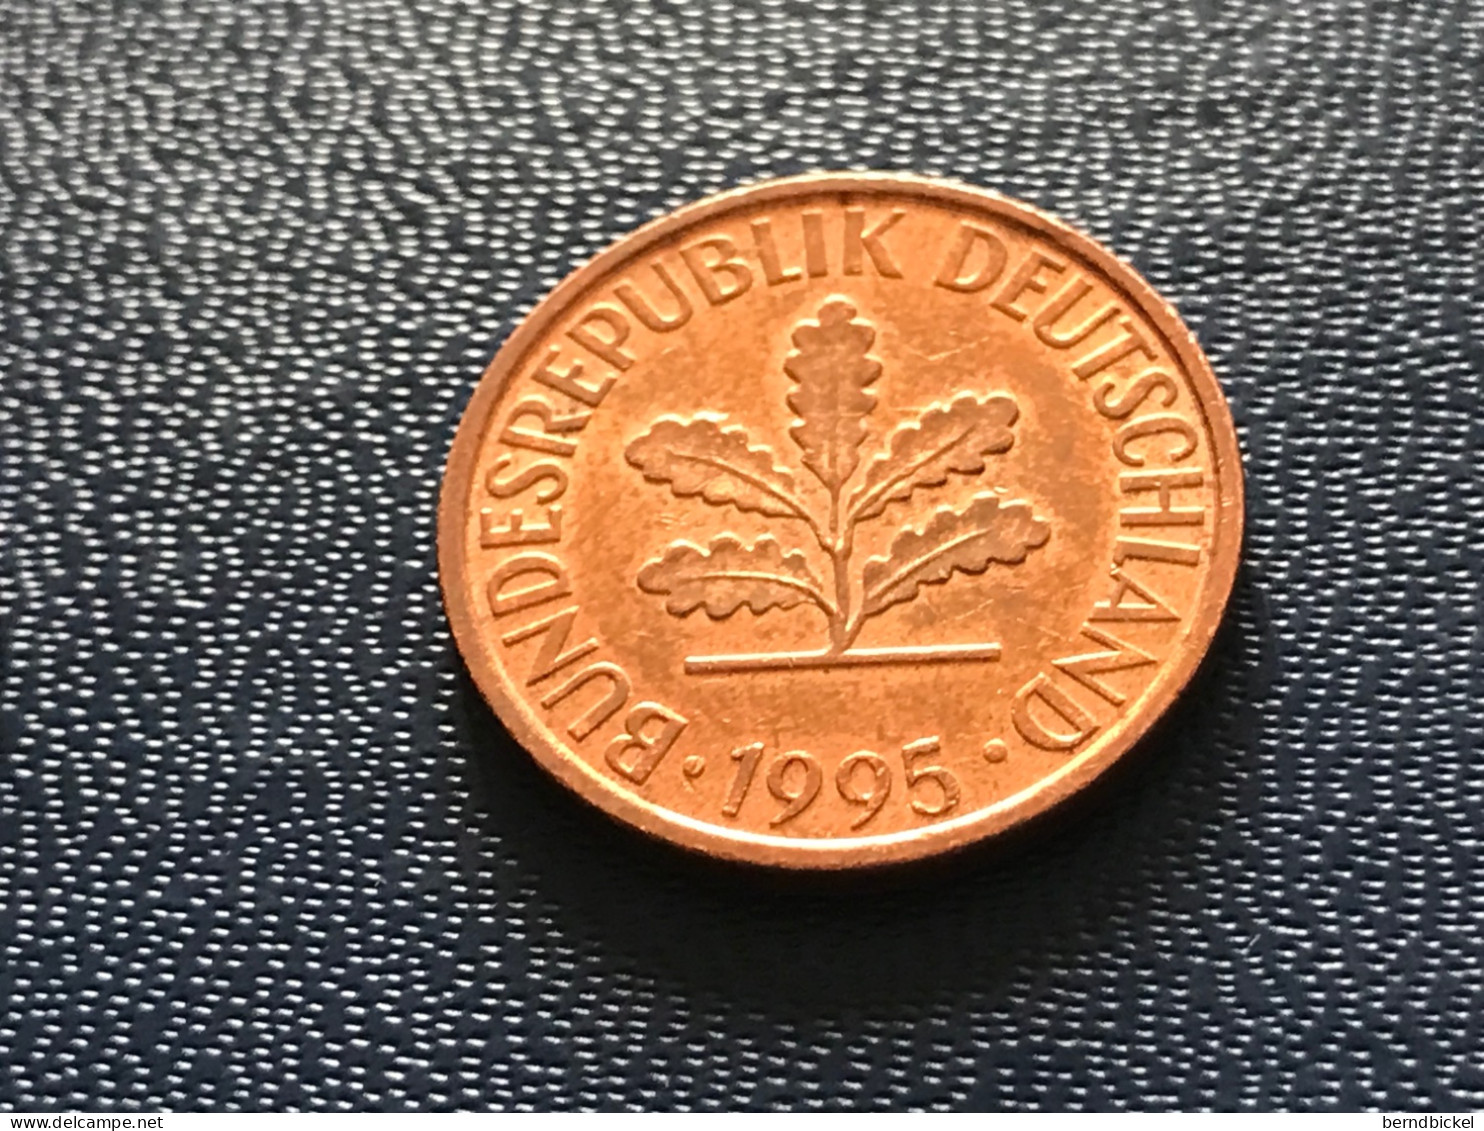 Münze Münzen Umlaufmünze Deutschland 2 Pfennig 1995 Münzzeichen D - 2 Pfennig